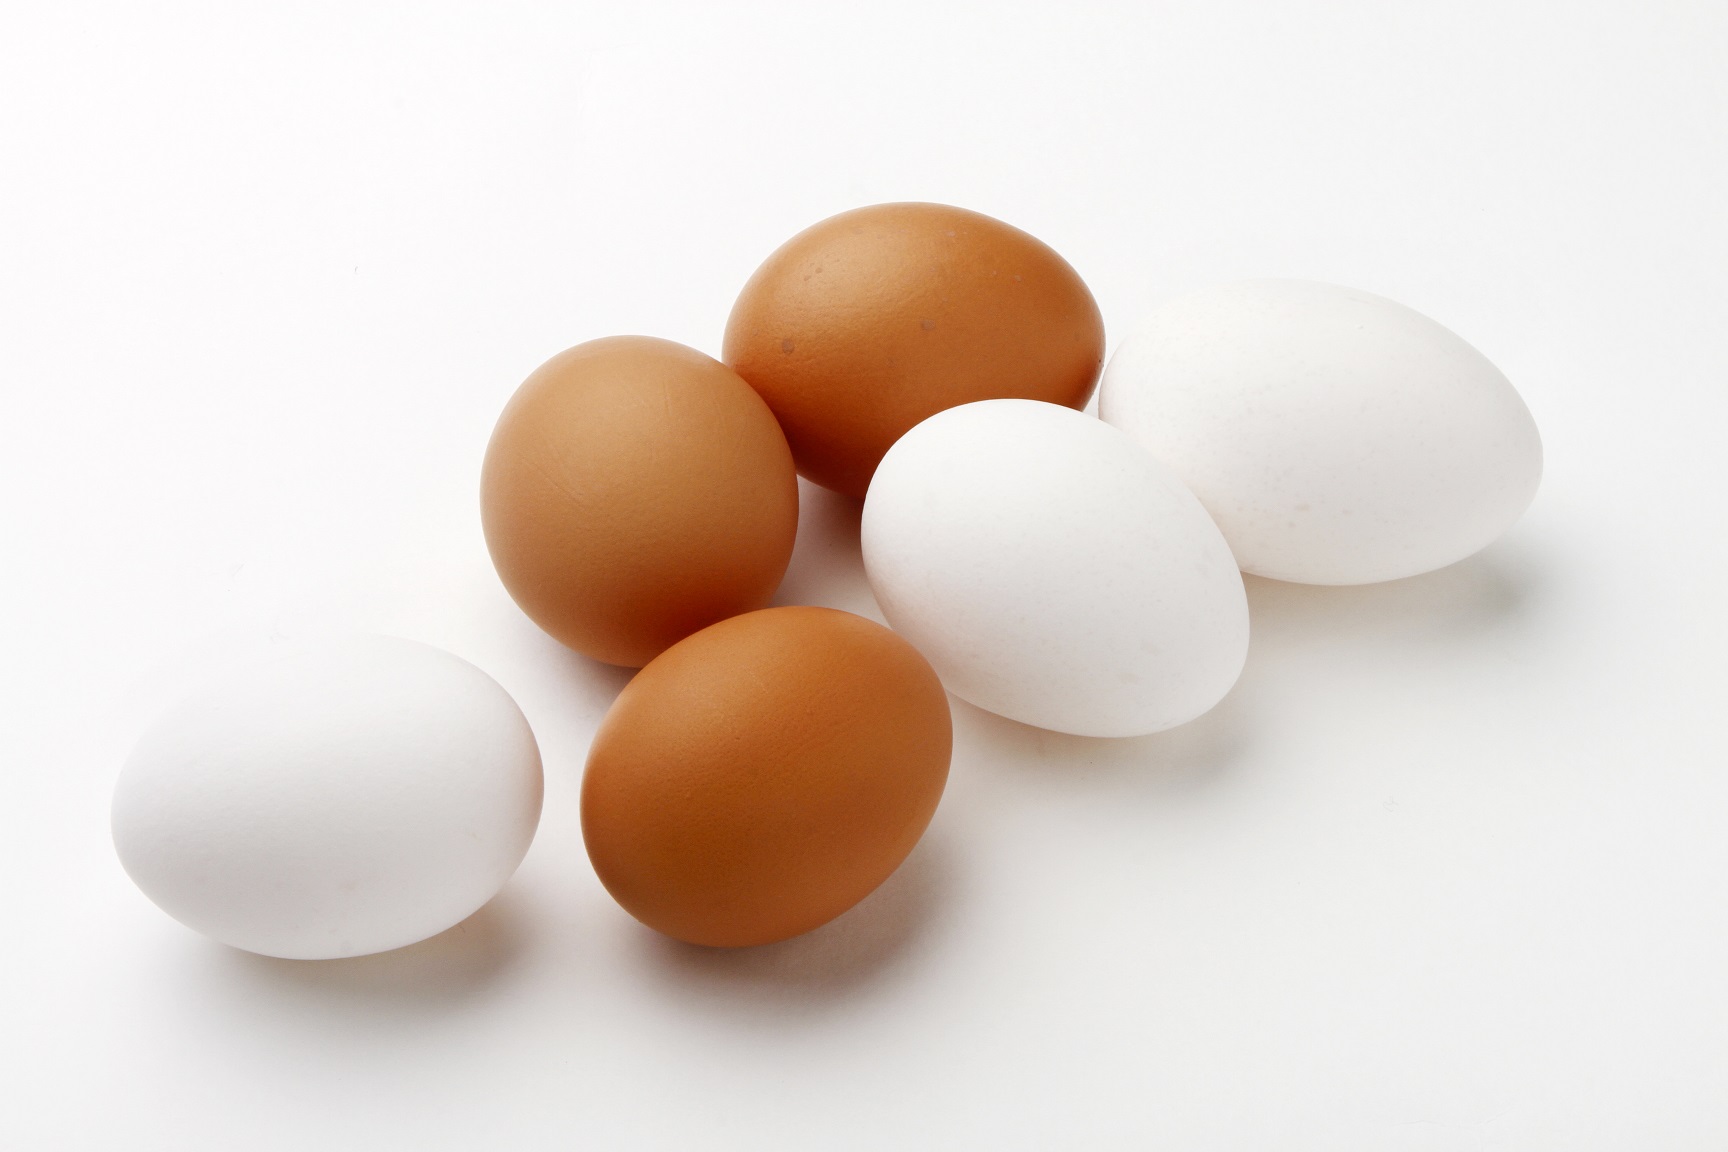 白色の卵3つ、茶色の卵3つが並んでいる写真